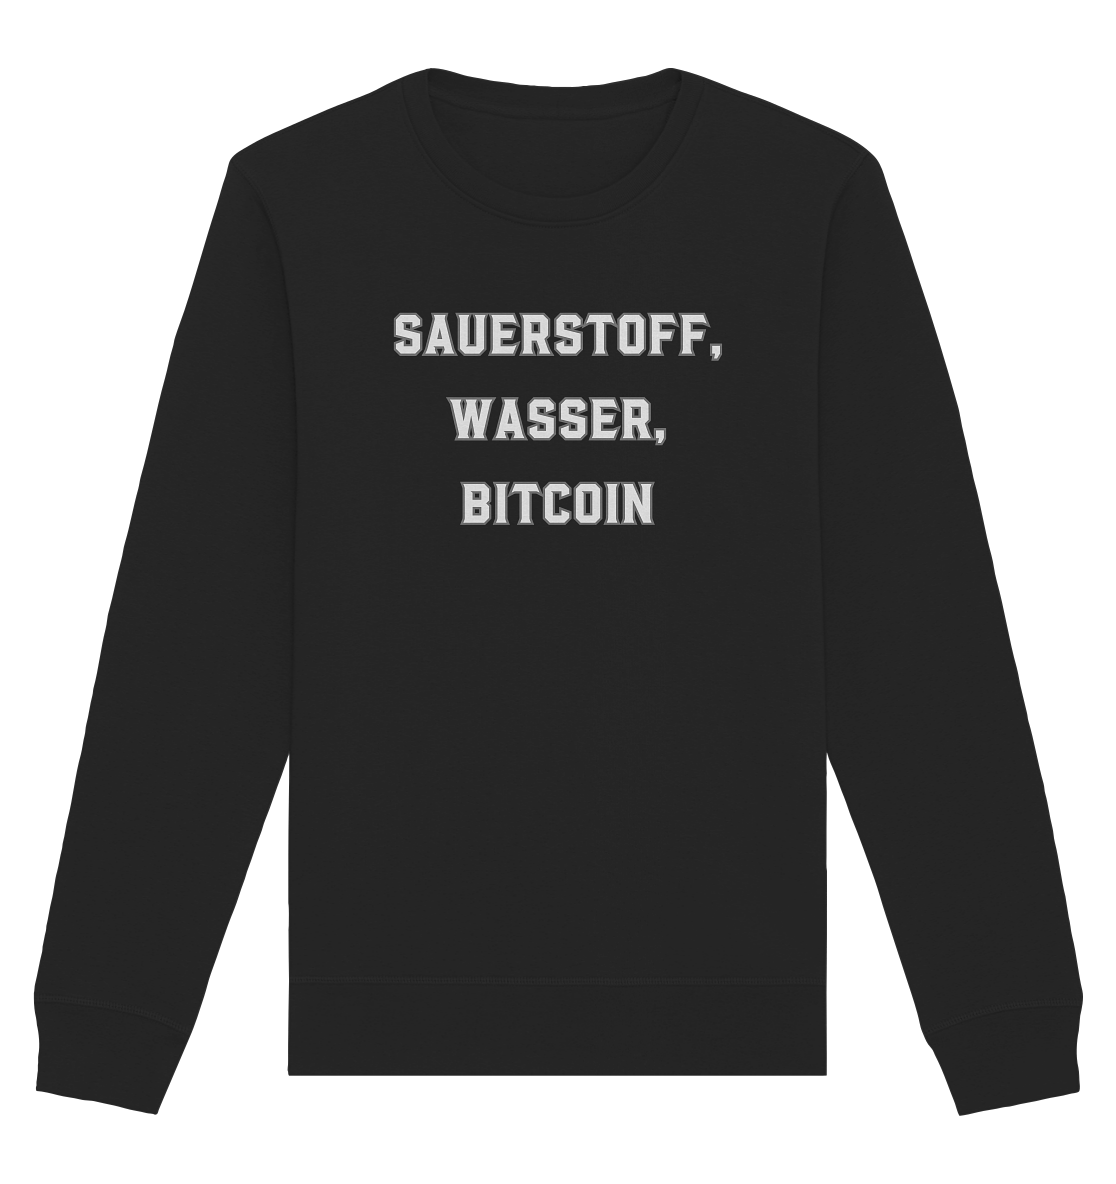 Sauerstoff, Wasser, Bitcoin - Organic Basic Unisex Sweatshirt